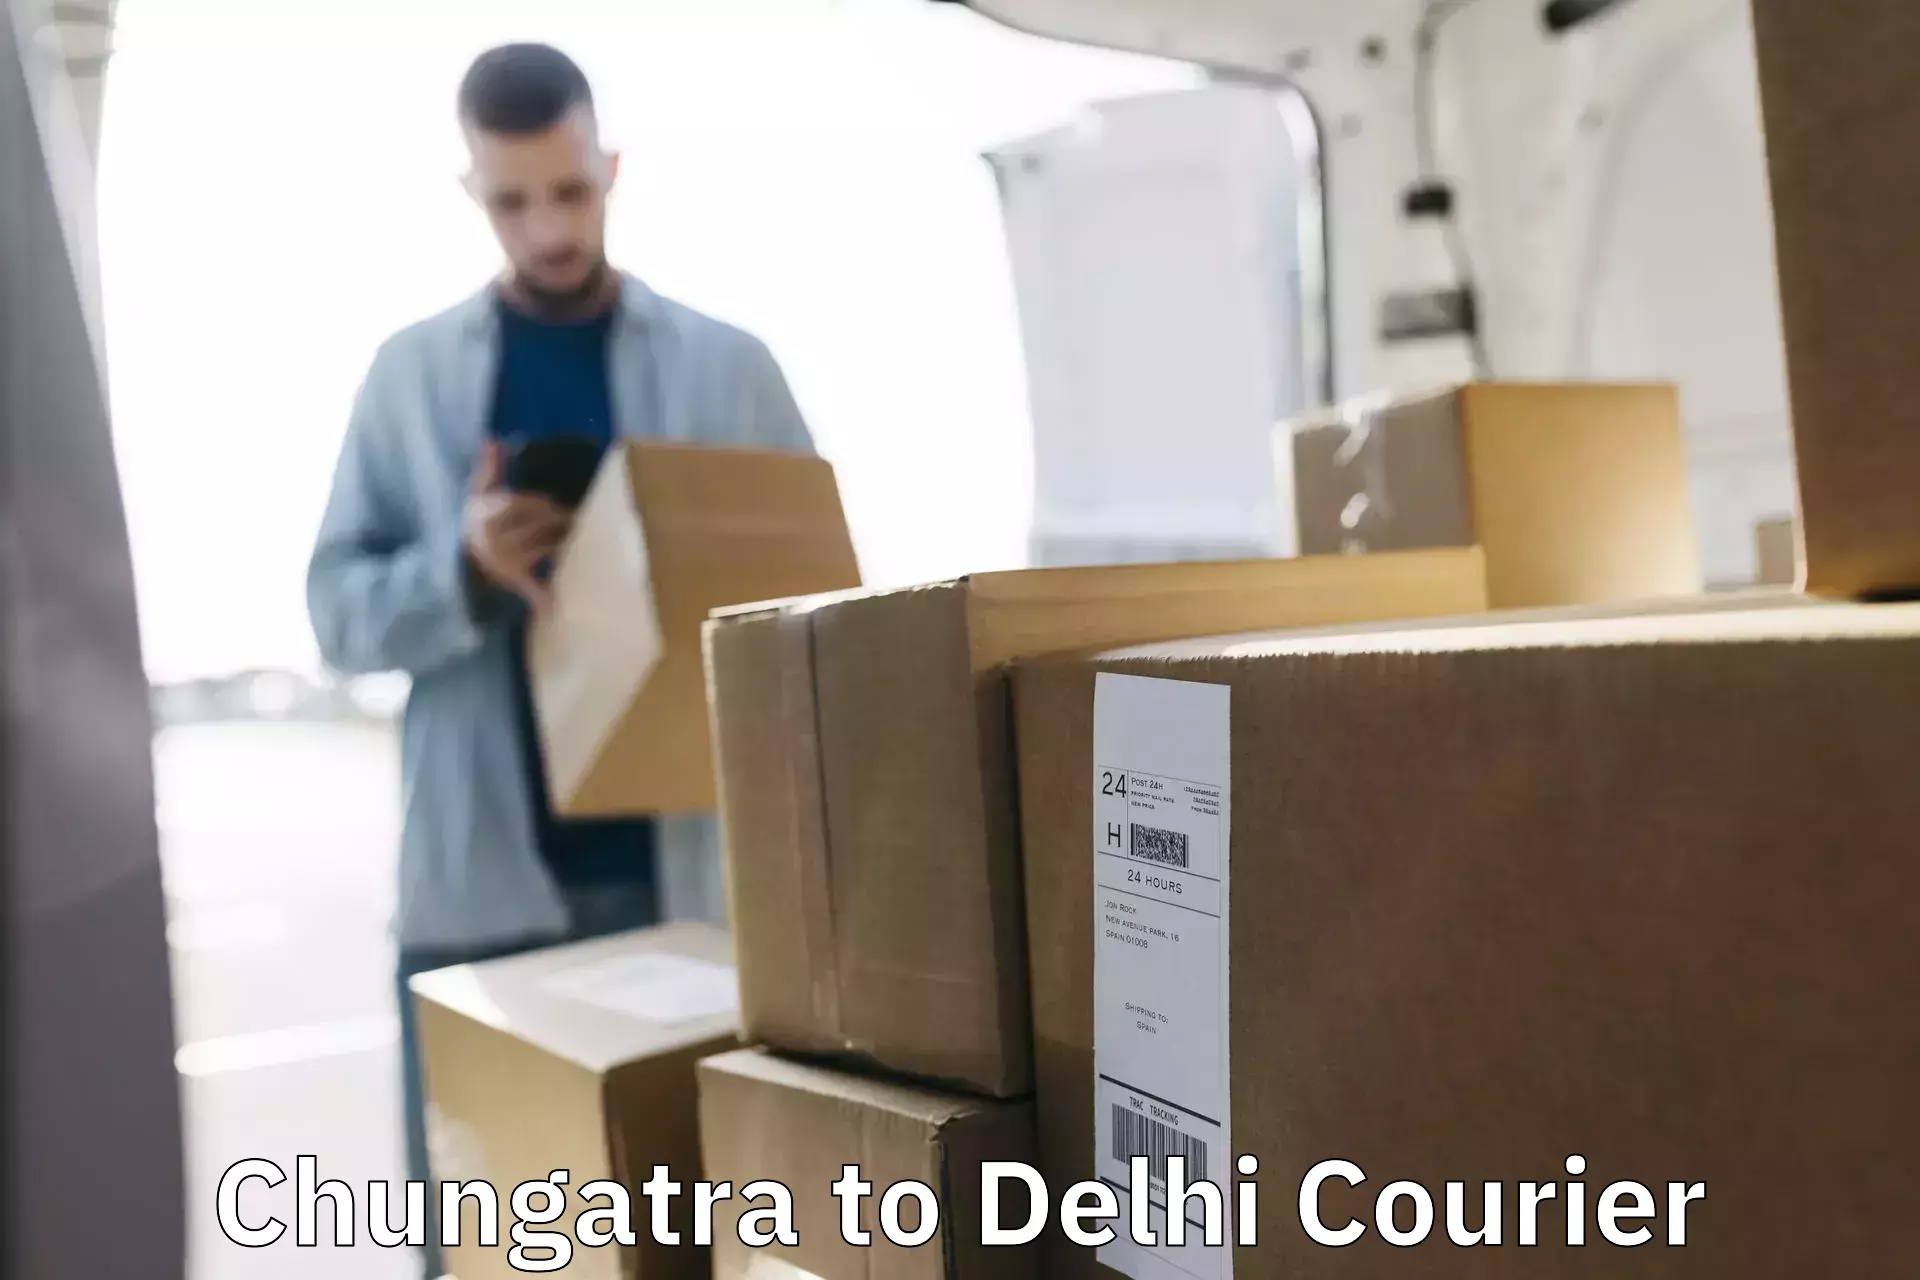 High-performance logistics Chungatra to IIT Delhi